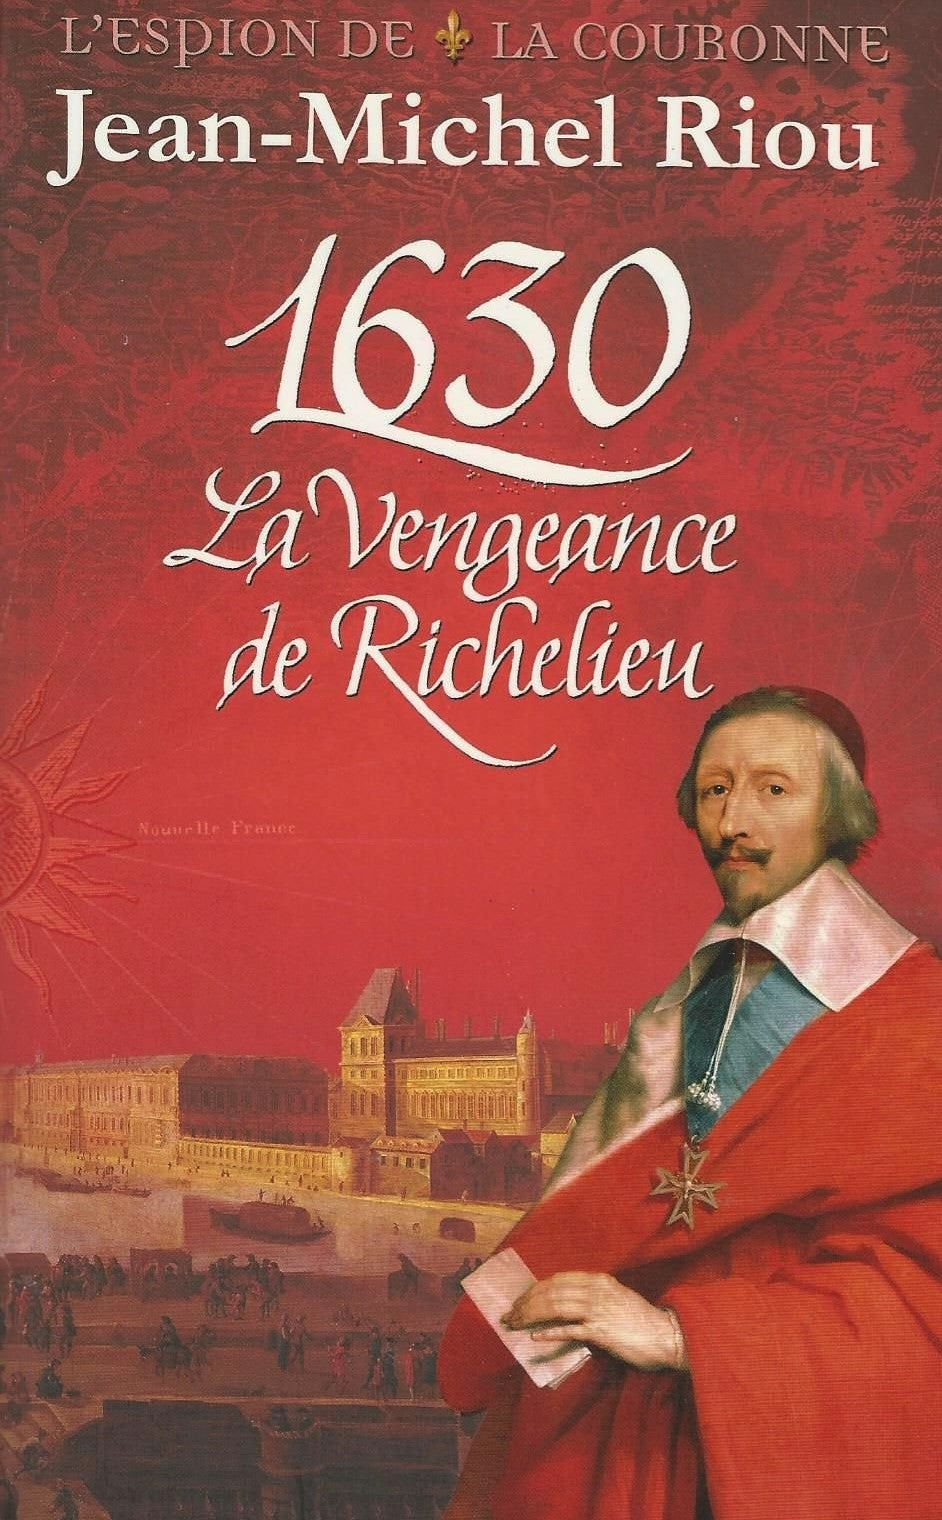 1630: La vengeance de Richelieu - Jean-Michel Riou